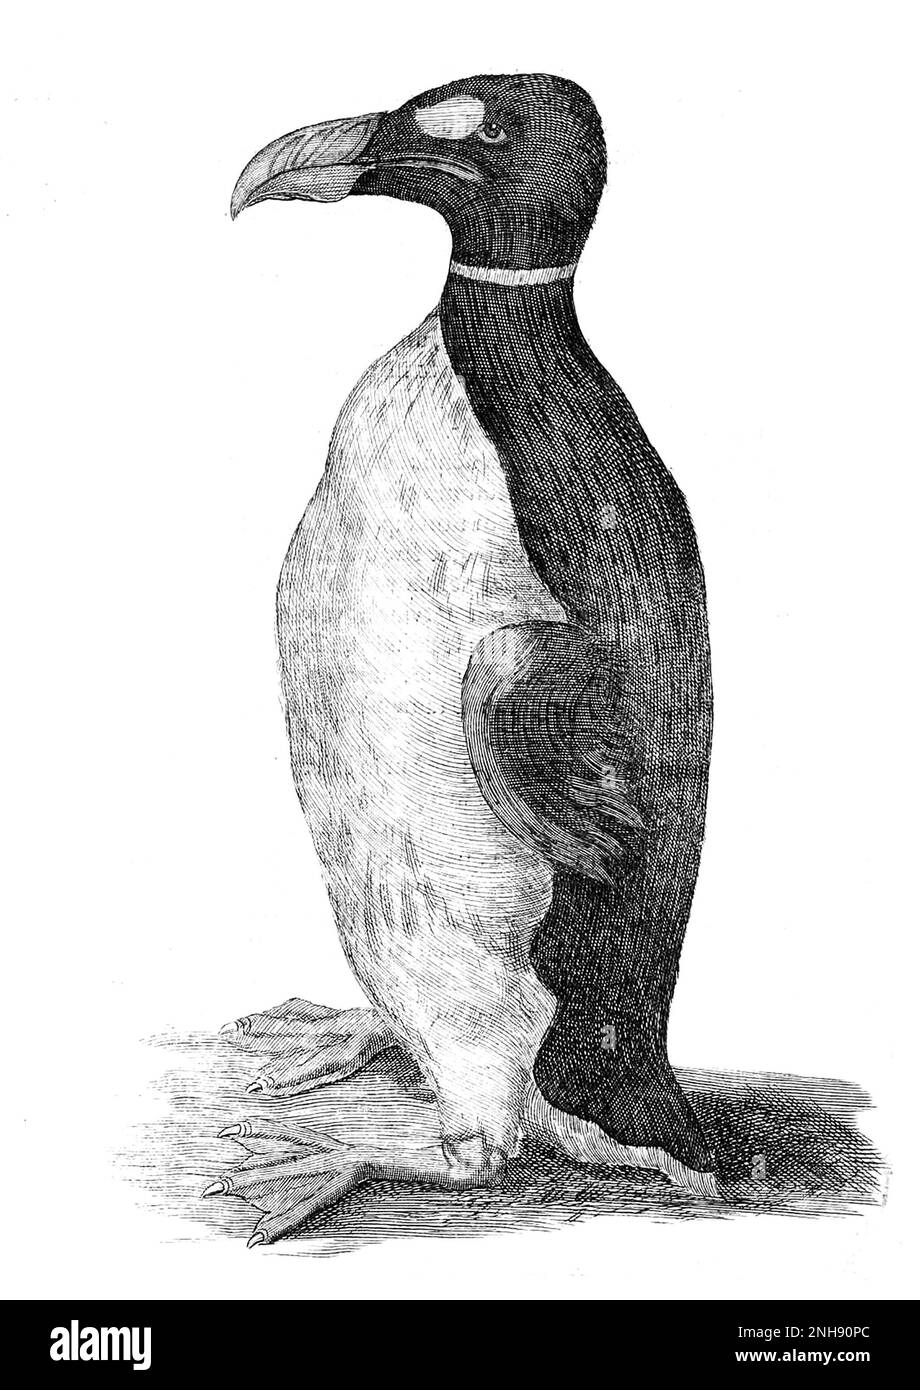 Solo ilustración conocida de un Gran Auk extraído de la vida. Esta fue la mascota del médico danés e historiador natural Olaus Wormius a.k.a. Gusano OLE (1588-1654). Lo recibió de las Islas Feroe y apareció en su libro Museum Wormianum, 1655. El gran auk (Pinguinus impennis) es una especie de alcid sin vuelo que se extinguió a mediados del siglo 19th. Fue la única especie moderna del género Pinguinus. Foto de stock